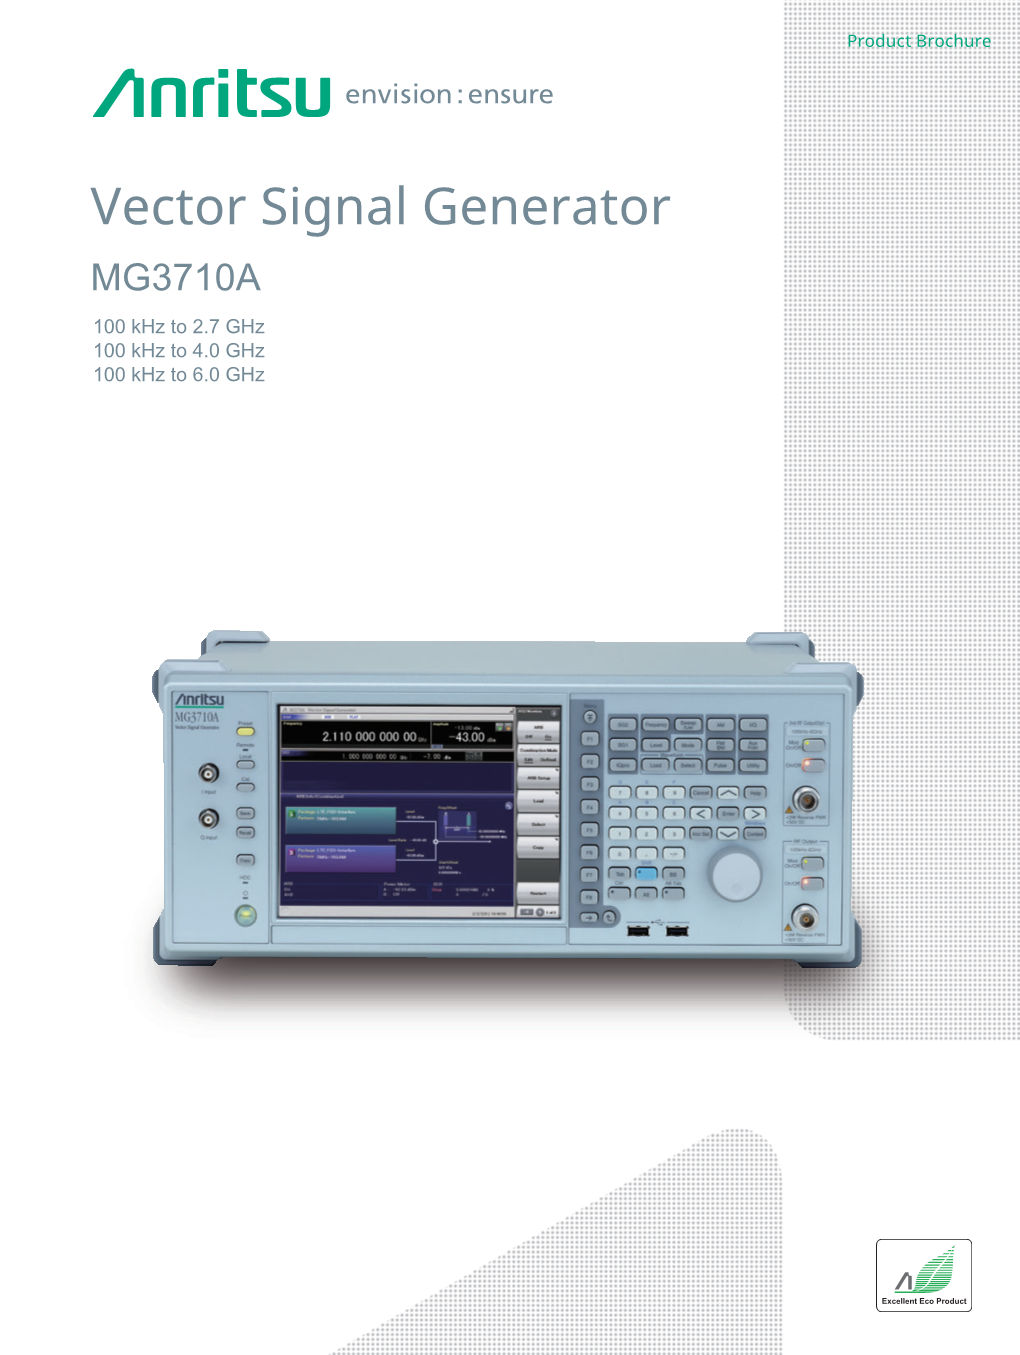 Vector Signal Generator MG3710A Brochure